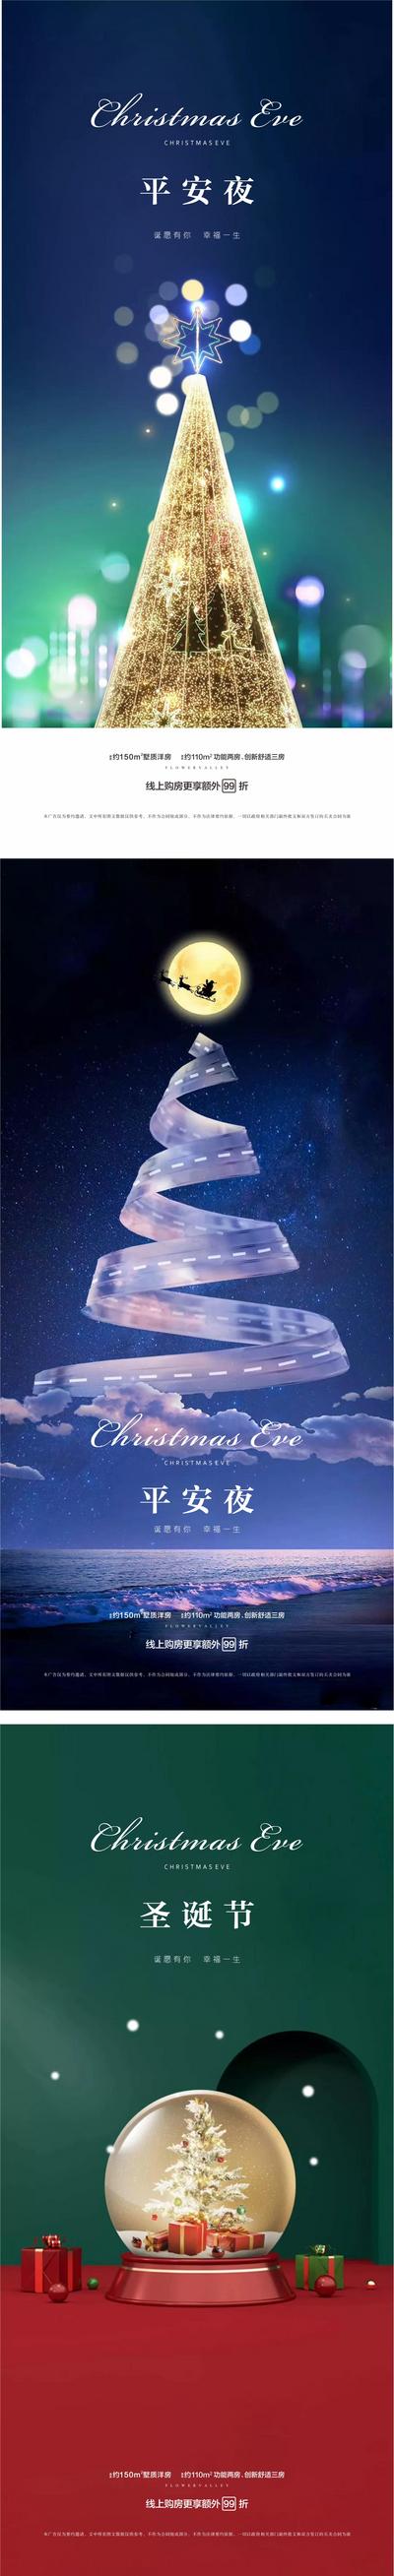 南门网 海报 房地产 公历节日 圣诞节 平安夜 圣诞树 水晶球